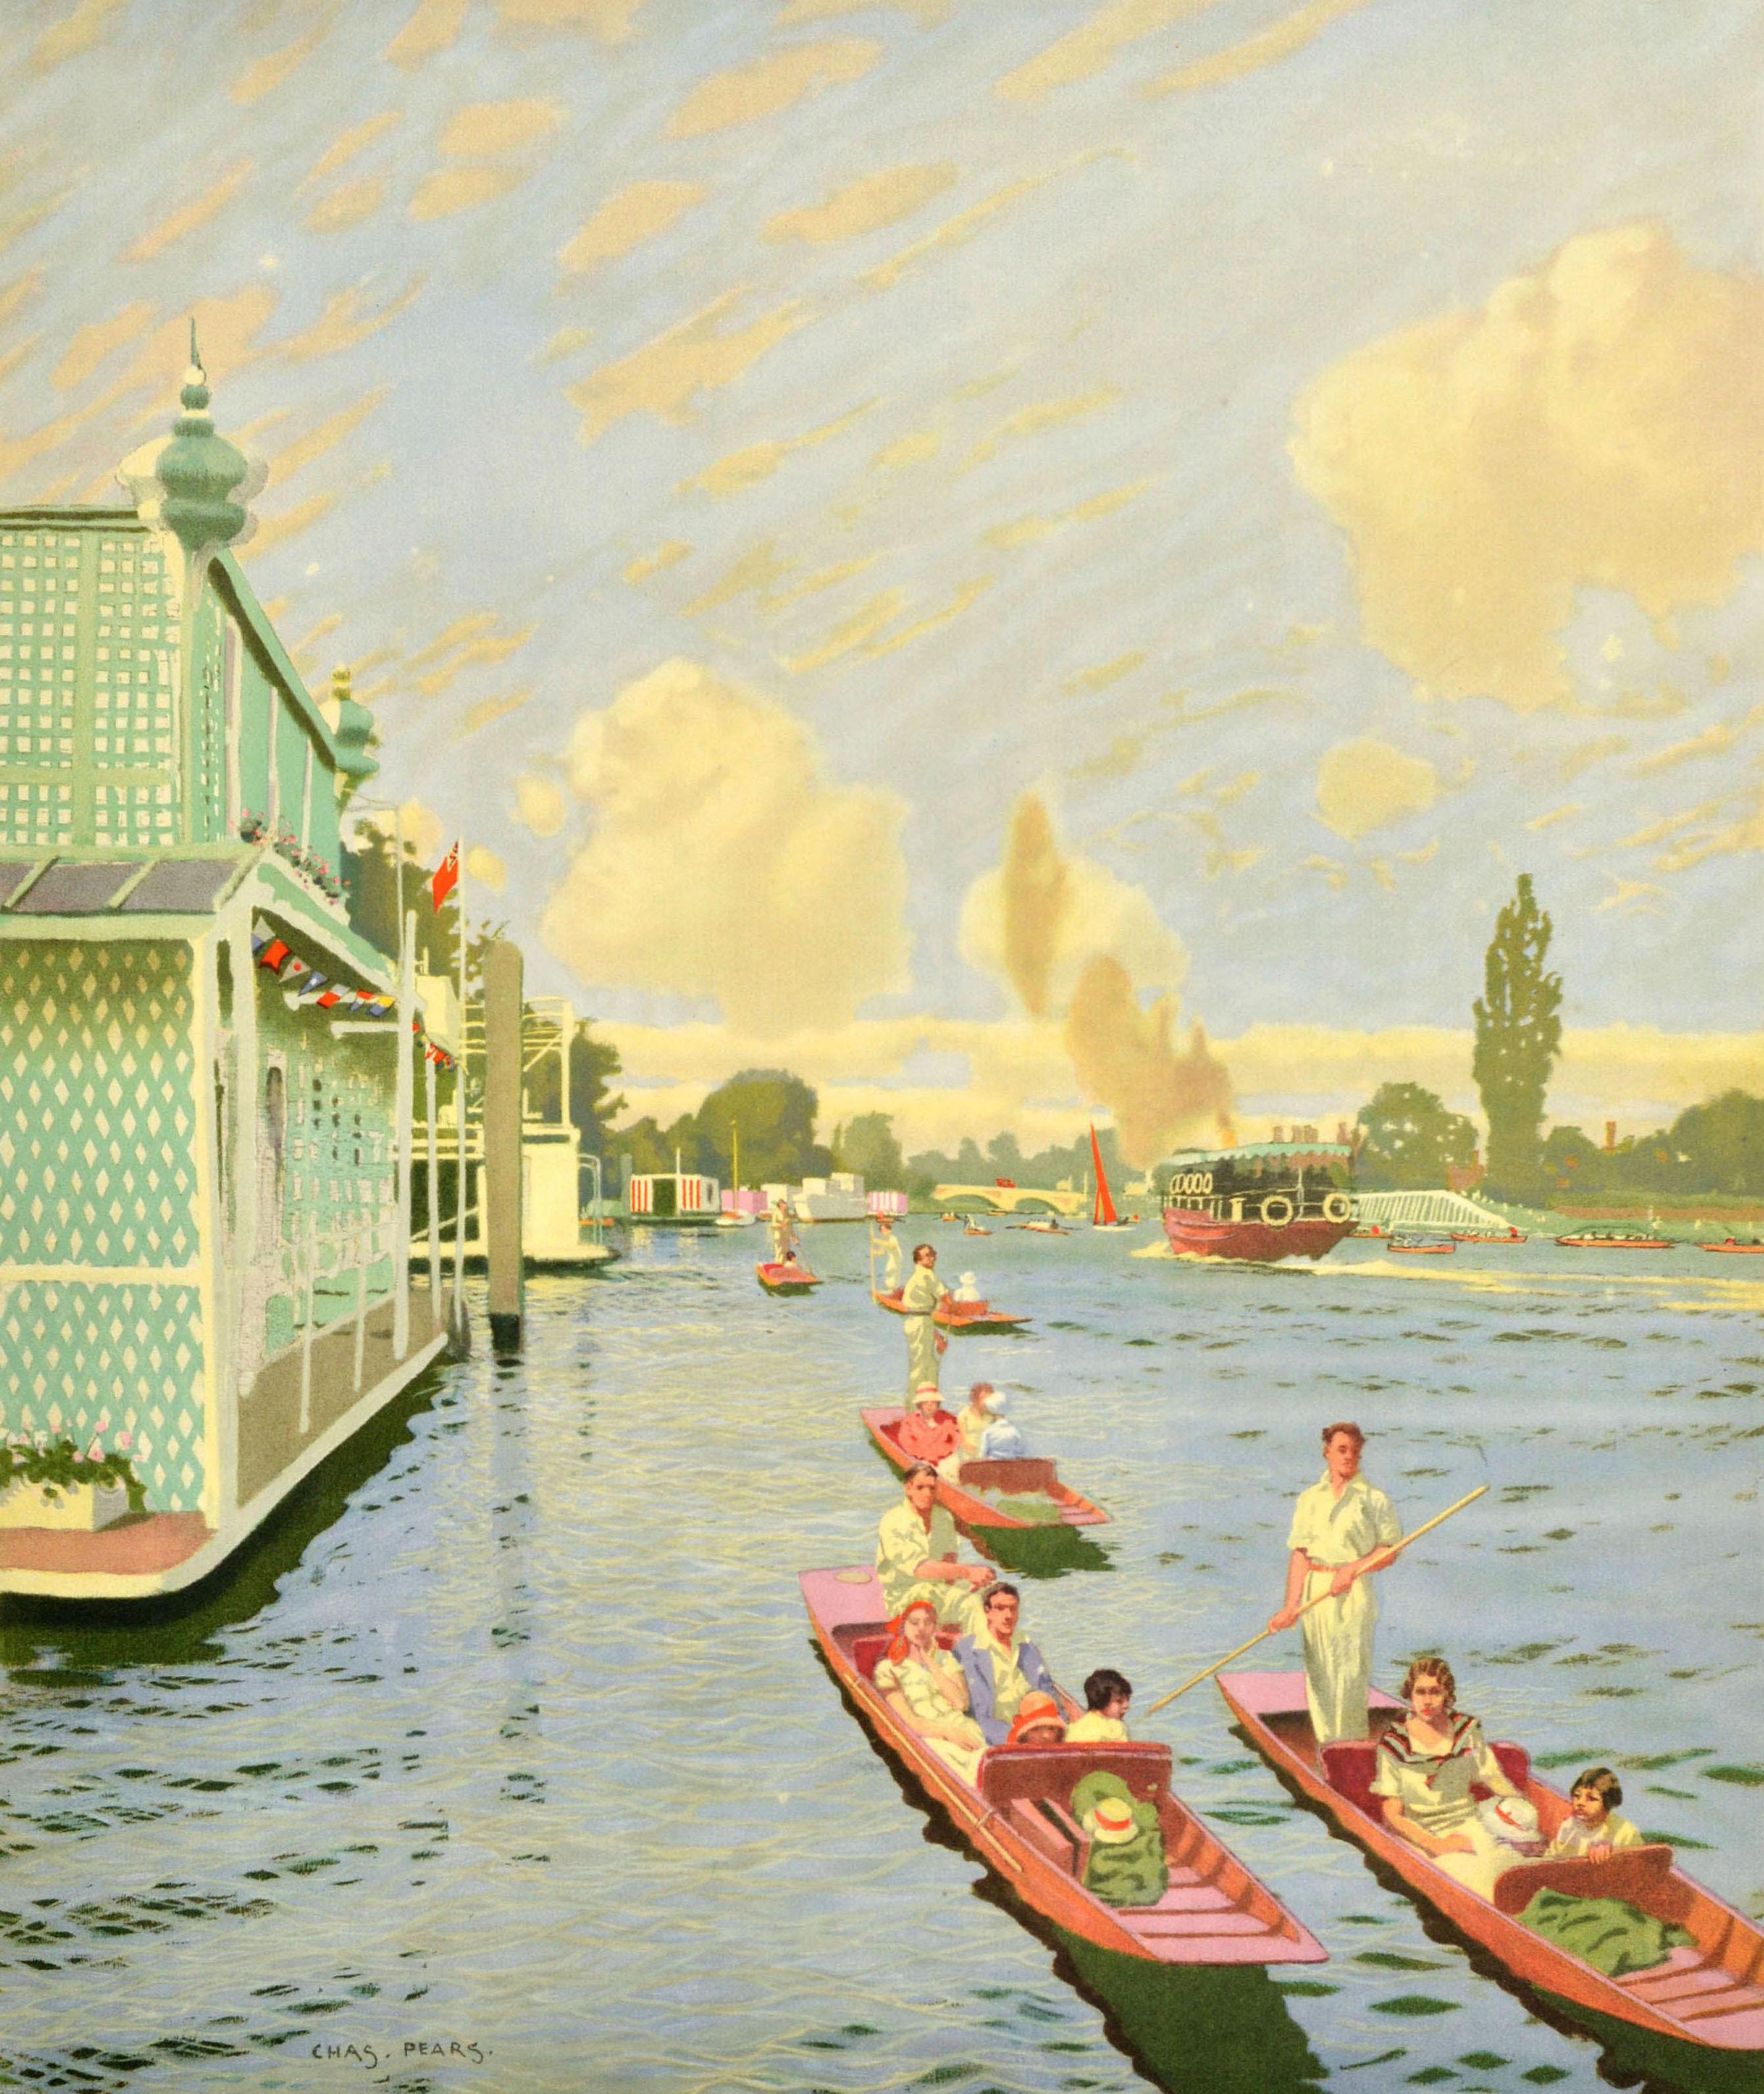 Original Vintage London Transport Reise-Werbeplakat für Walton Twickenham Windsor mit einer großen Illustration des britischen Malers Charles Pears (1873-1958), die Menschen in sommerlicher weißer Kleidung auf Booten entlang der Themse mit Brücken